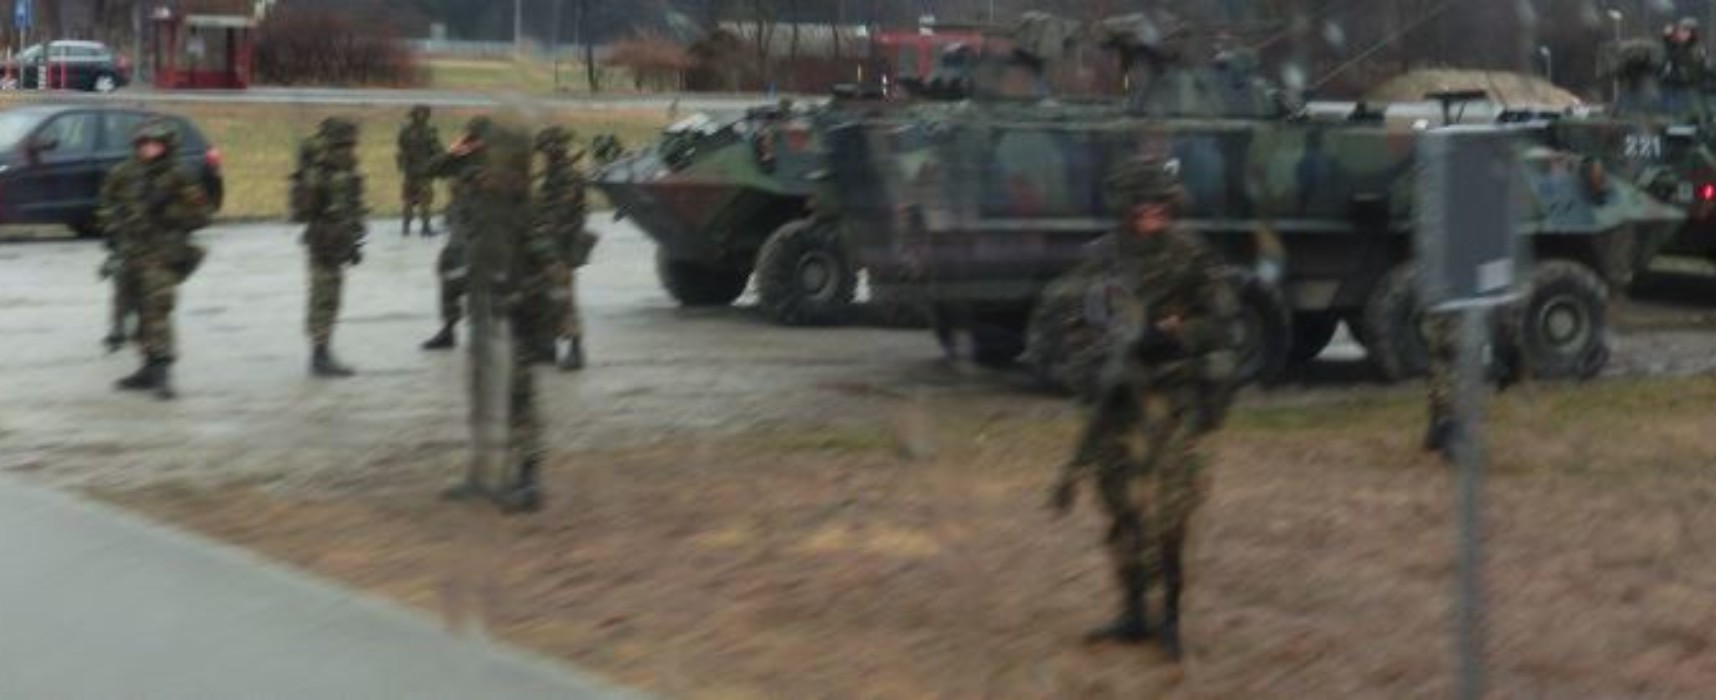 Inspektion militärischer Aktivitäten der Schweizer Armee durch Luxemburg